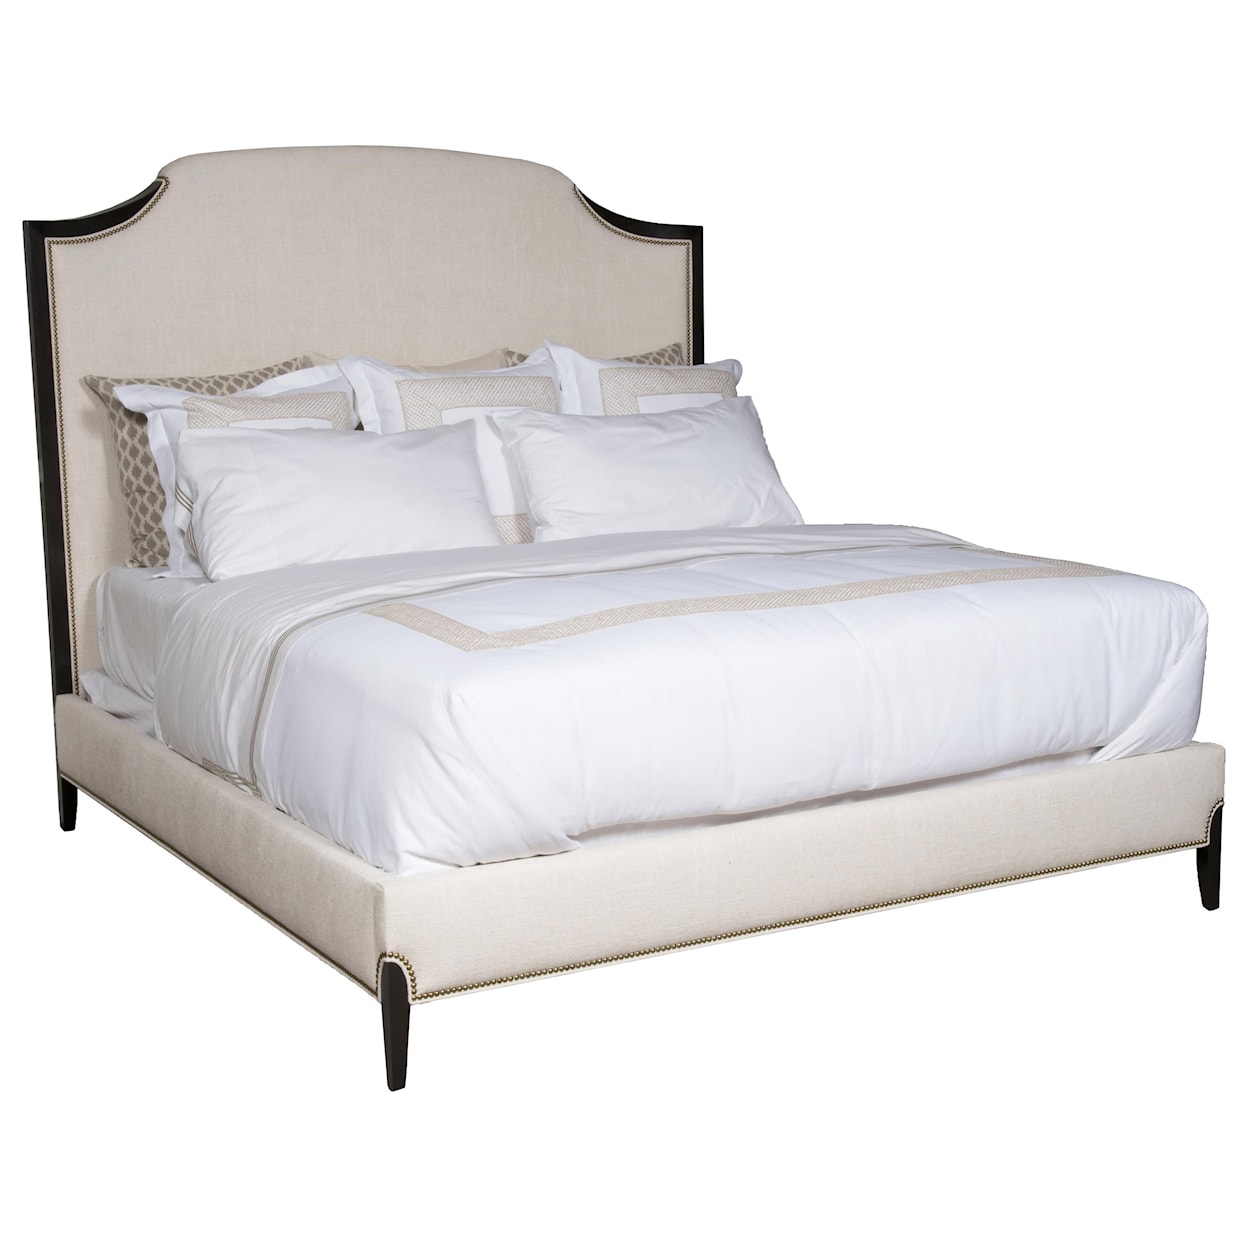 Vanguard Furniture Lillet Bedroom Upholstered King Bed